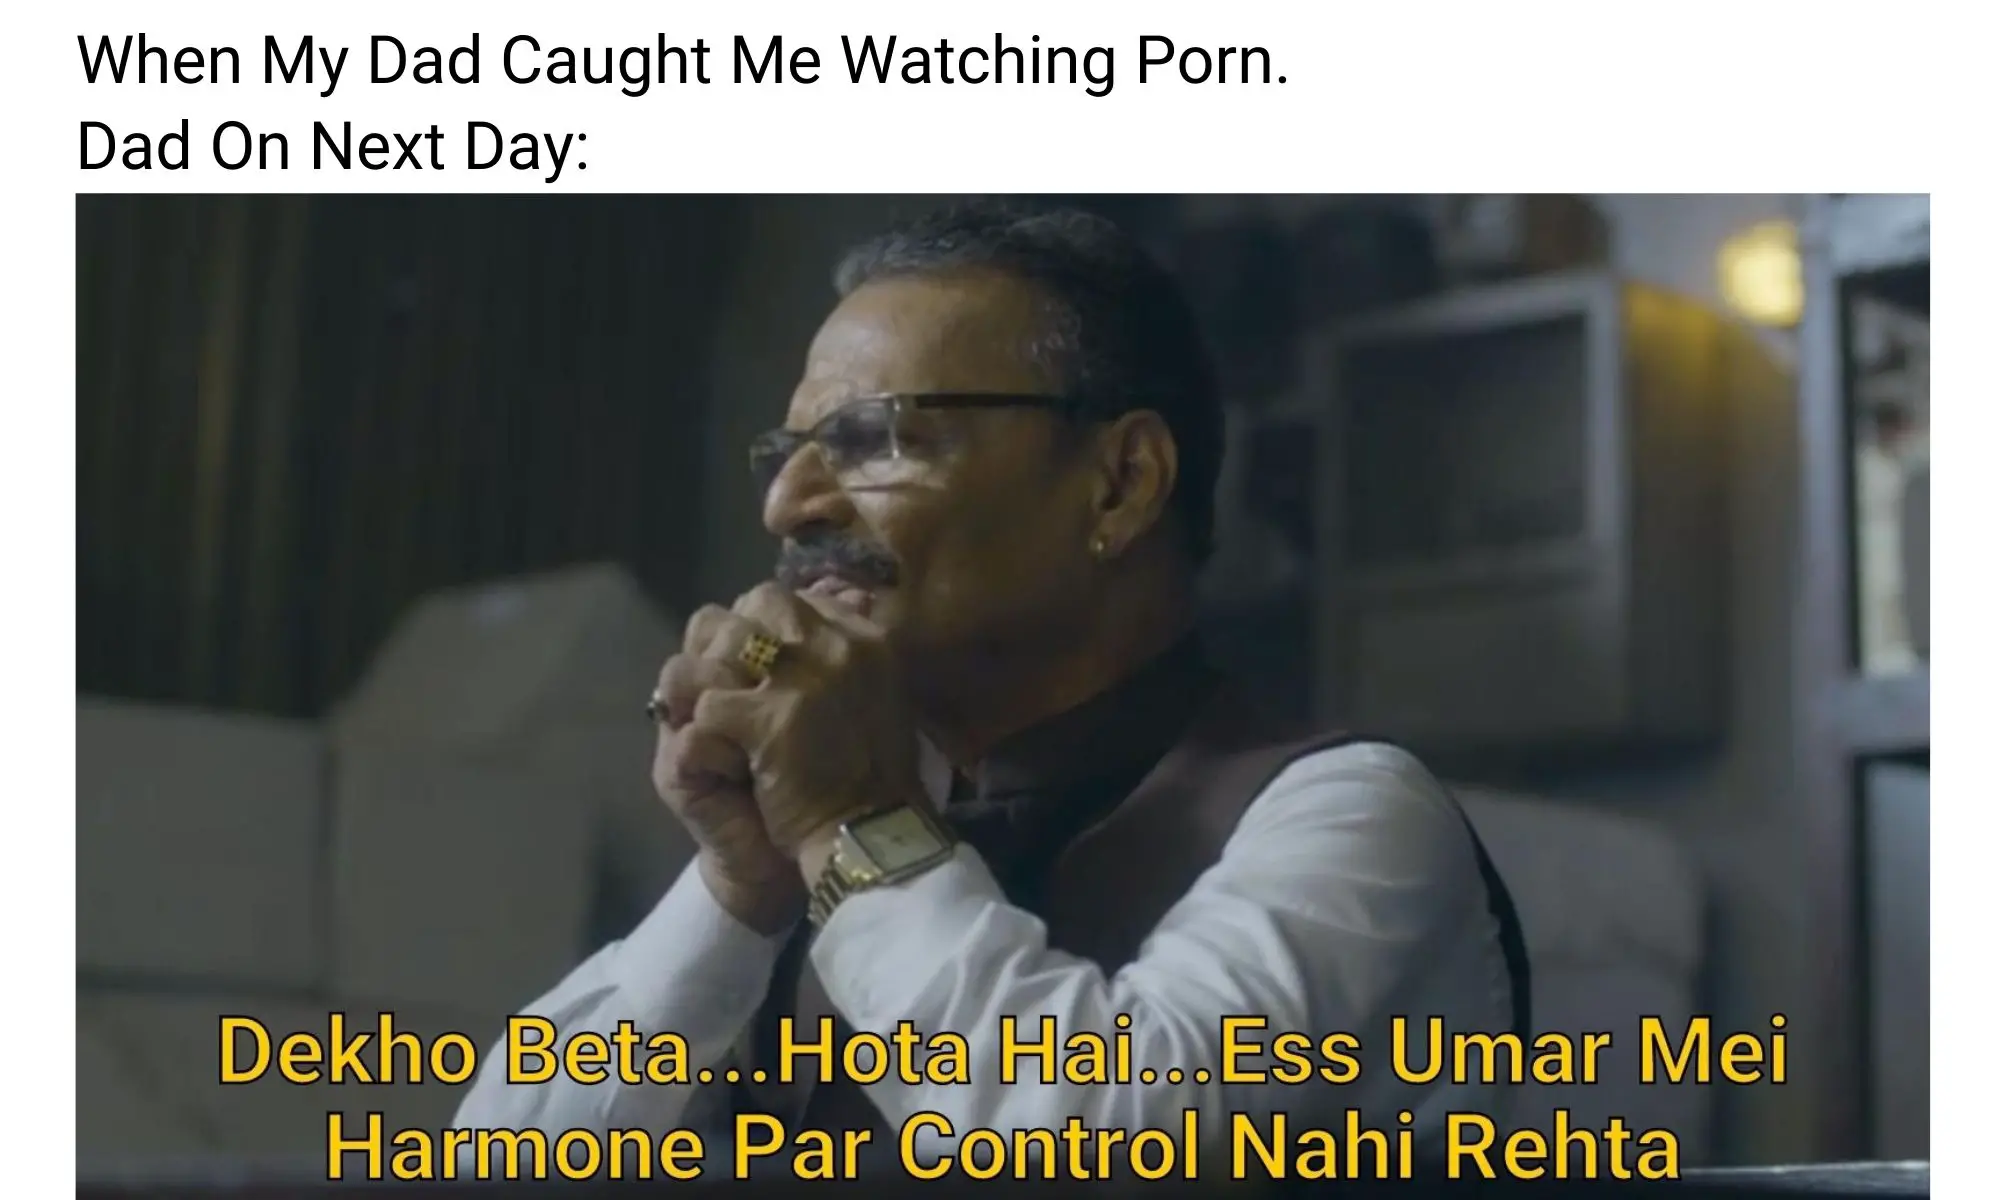 Dadda tyagi meme on caught watching porn